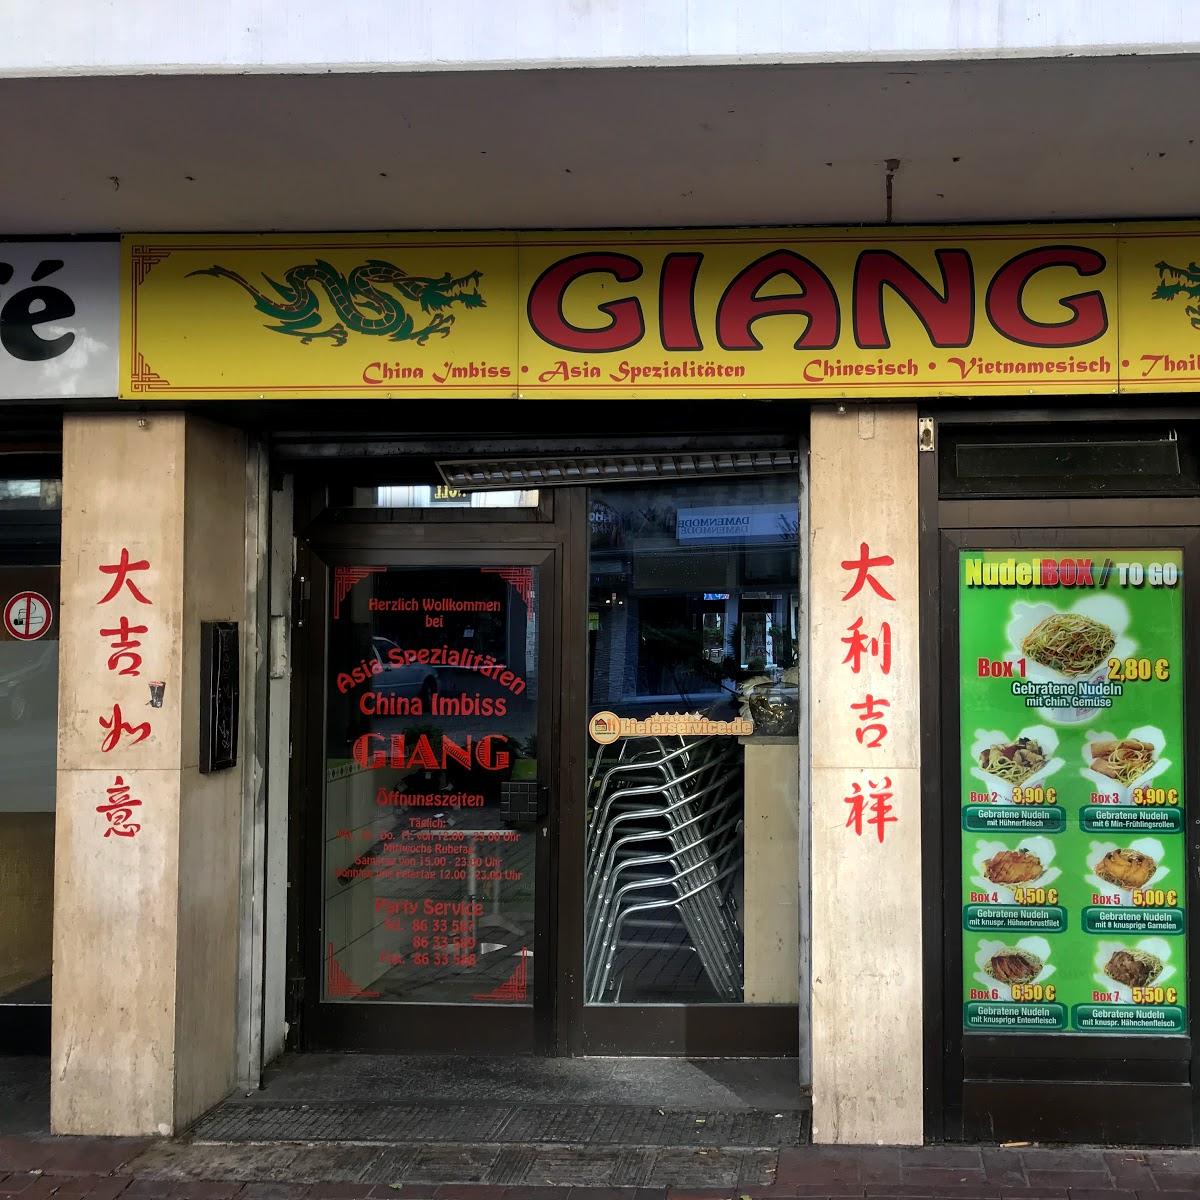 Restaurant "China Imbiss Giang" in Dortmund